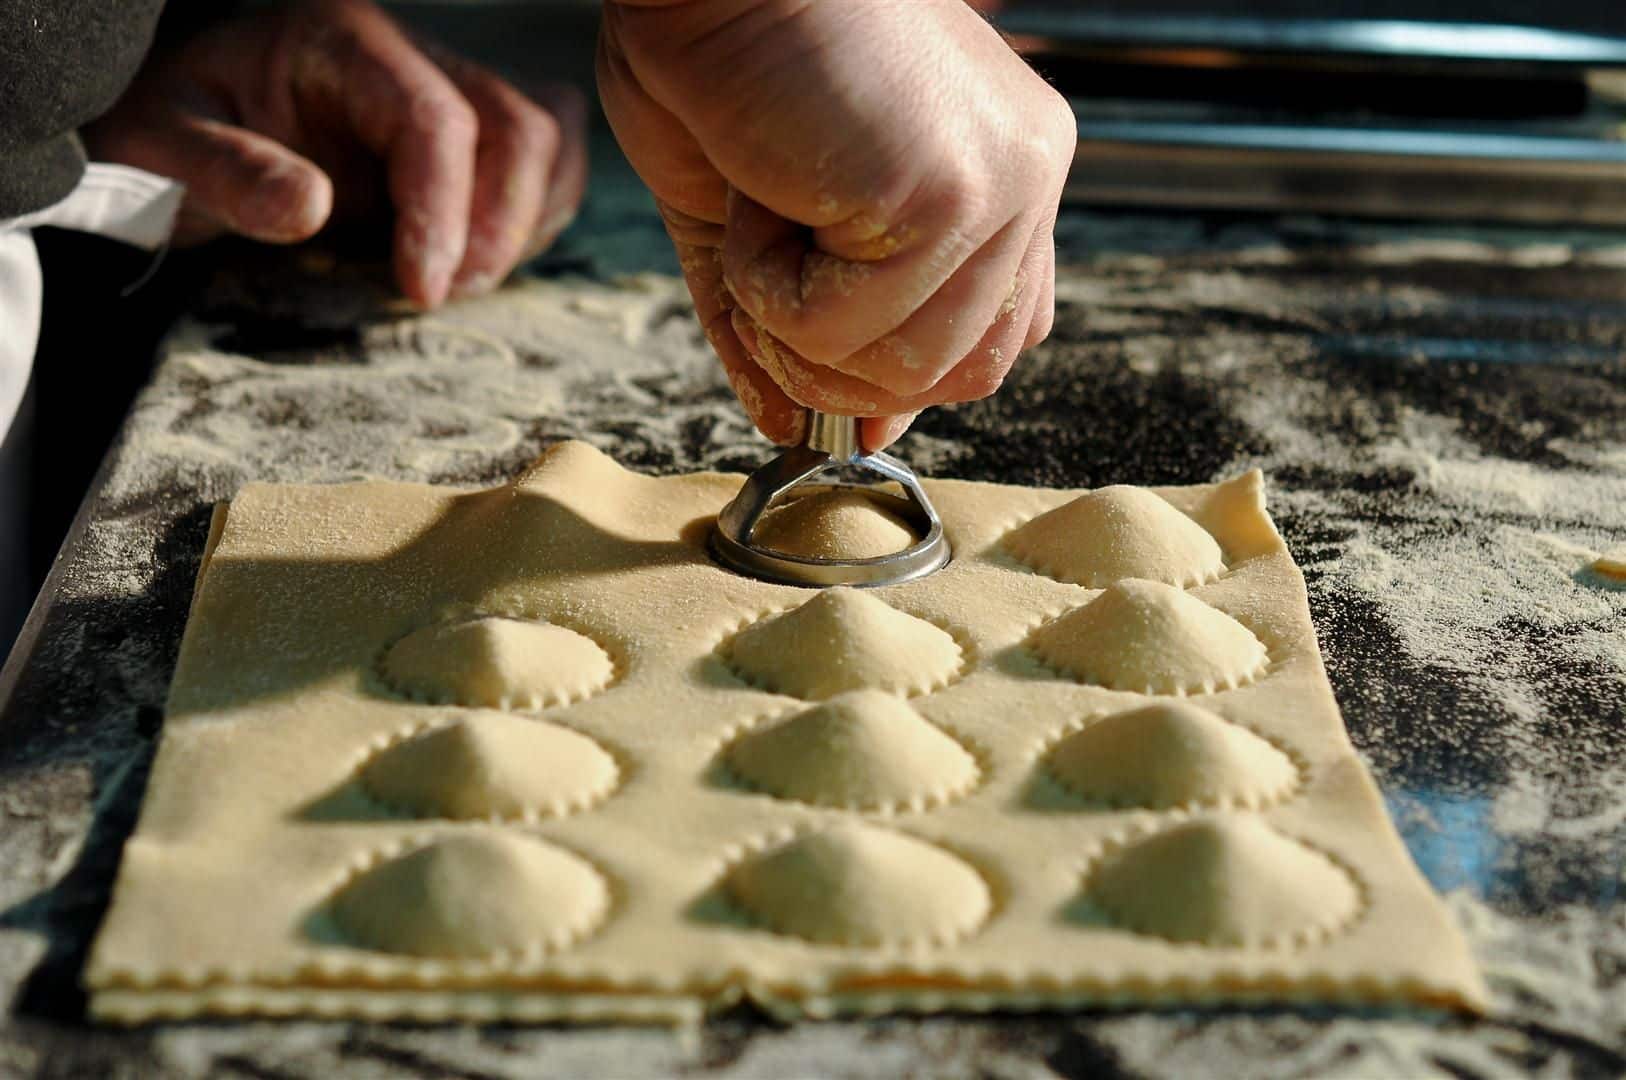 פסטה מיאה התחילה כמפעל קטן לייצור פסטה טרייה להכנה ביתית